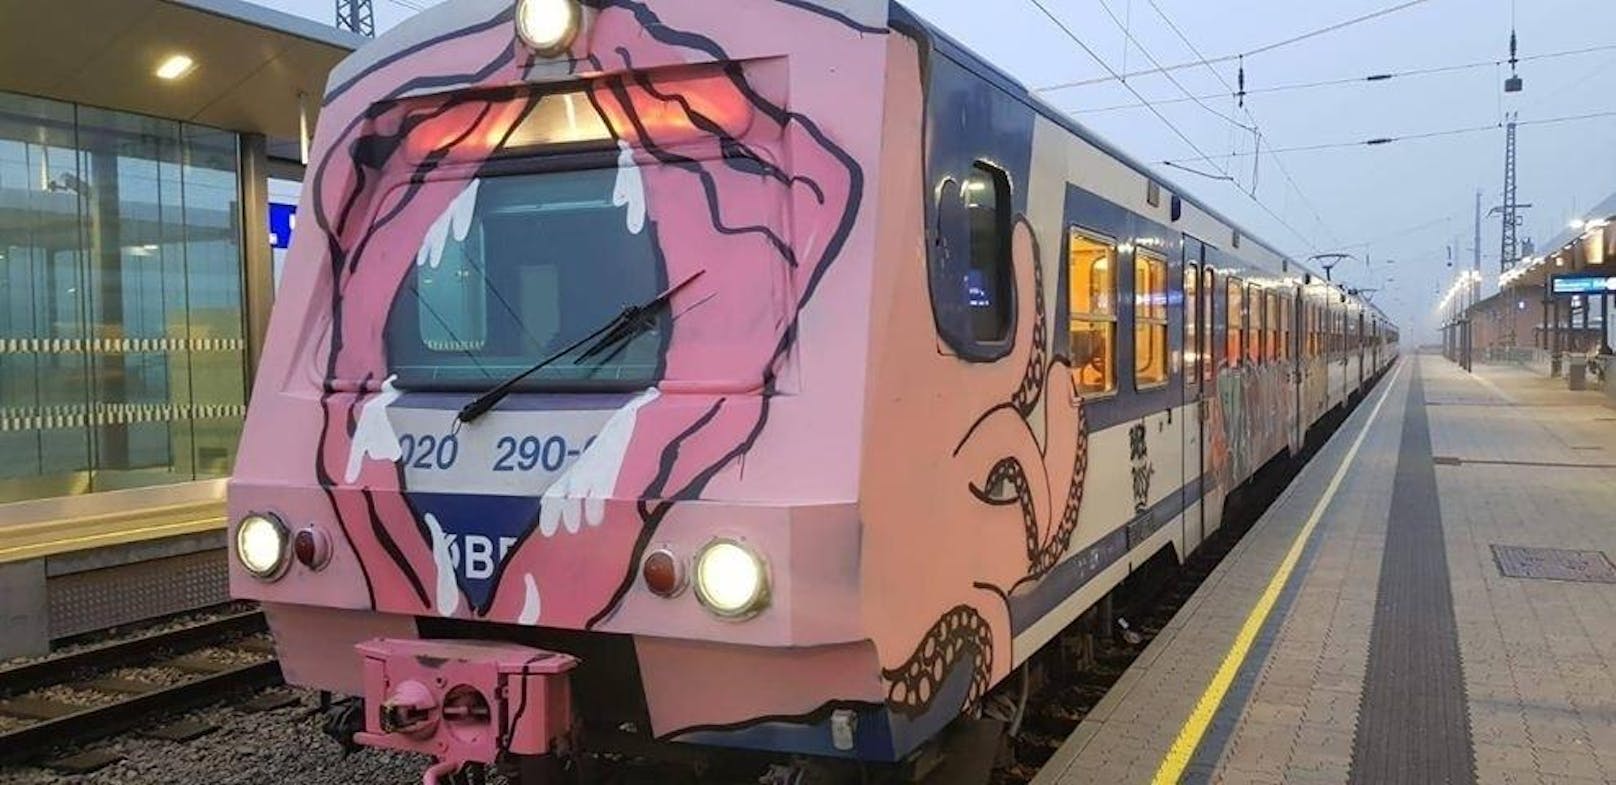 Der S-Bahn-Zug bekam von unbekannten Sprayern einen Vagina-Look verpasst. 